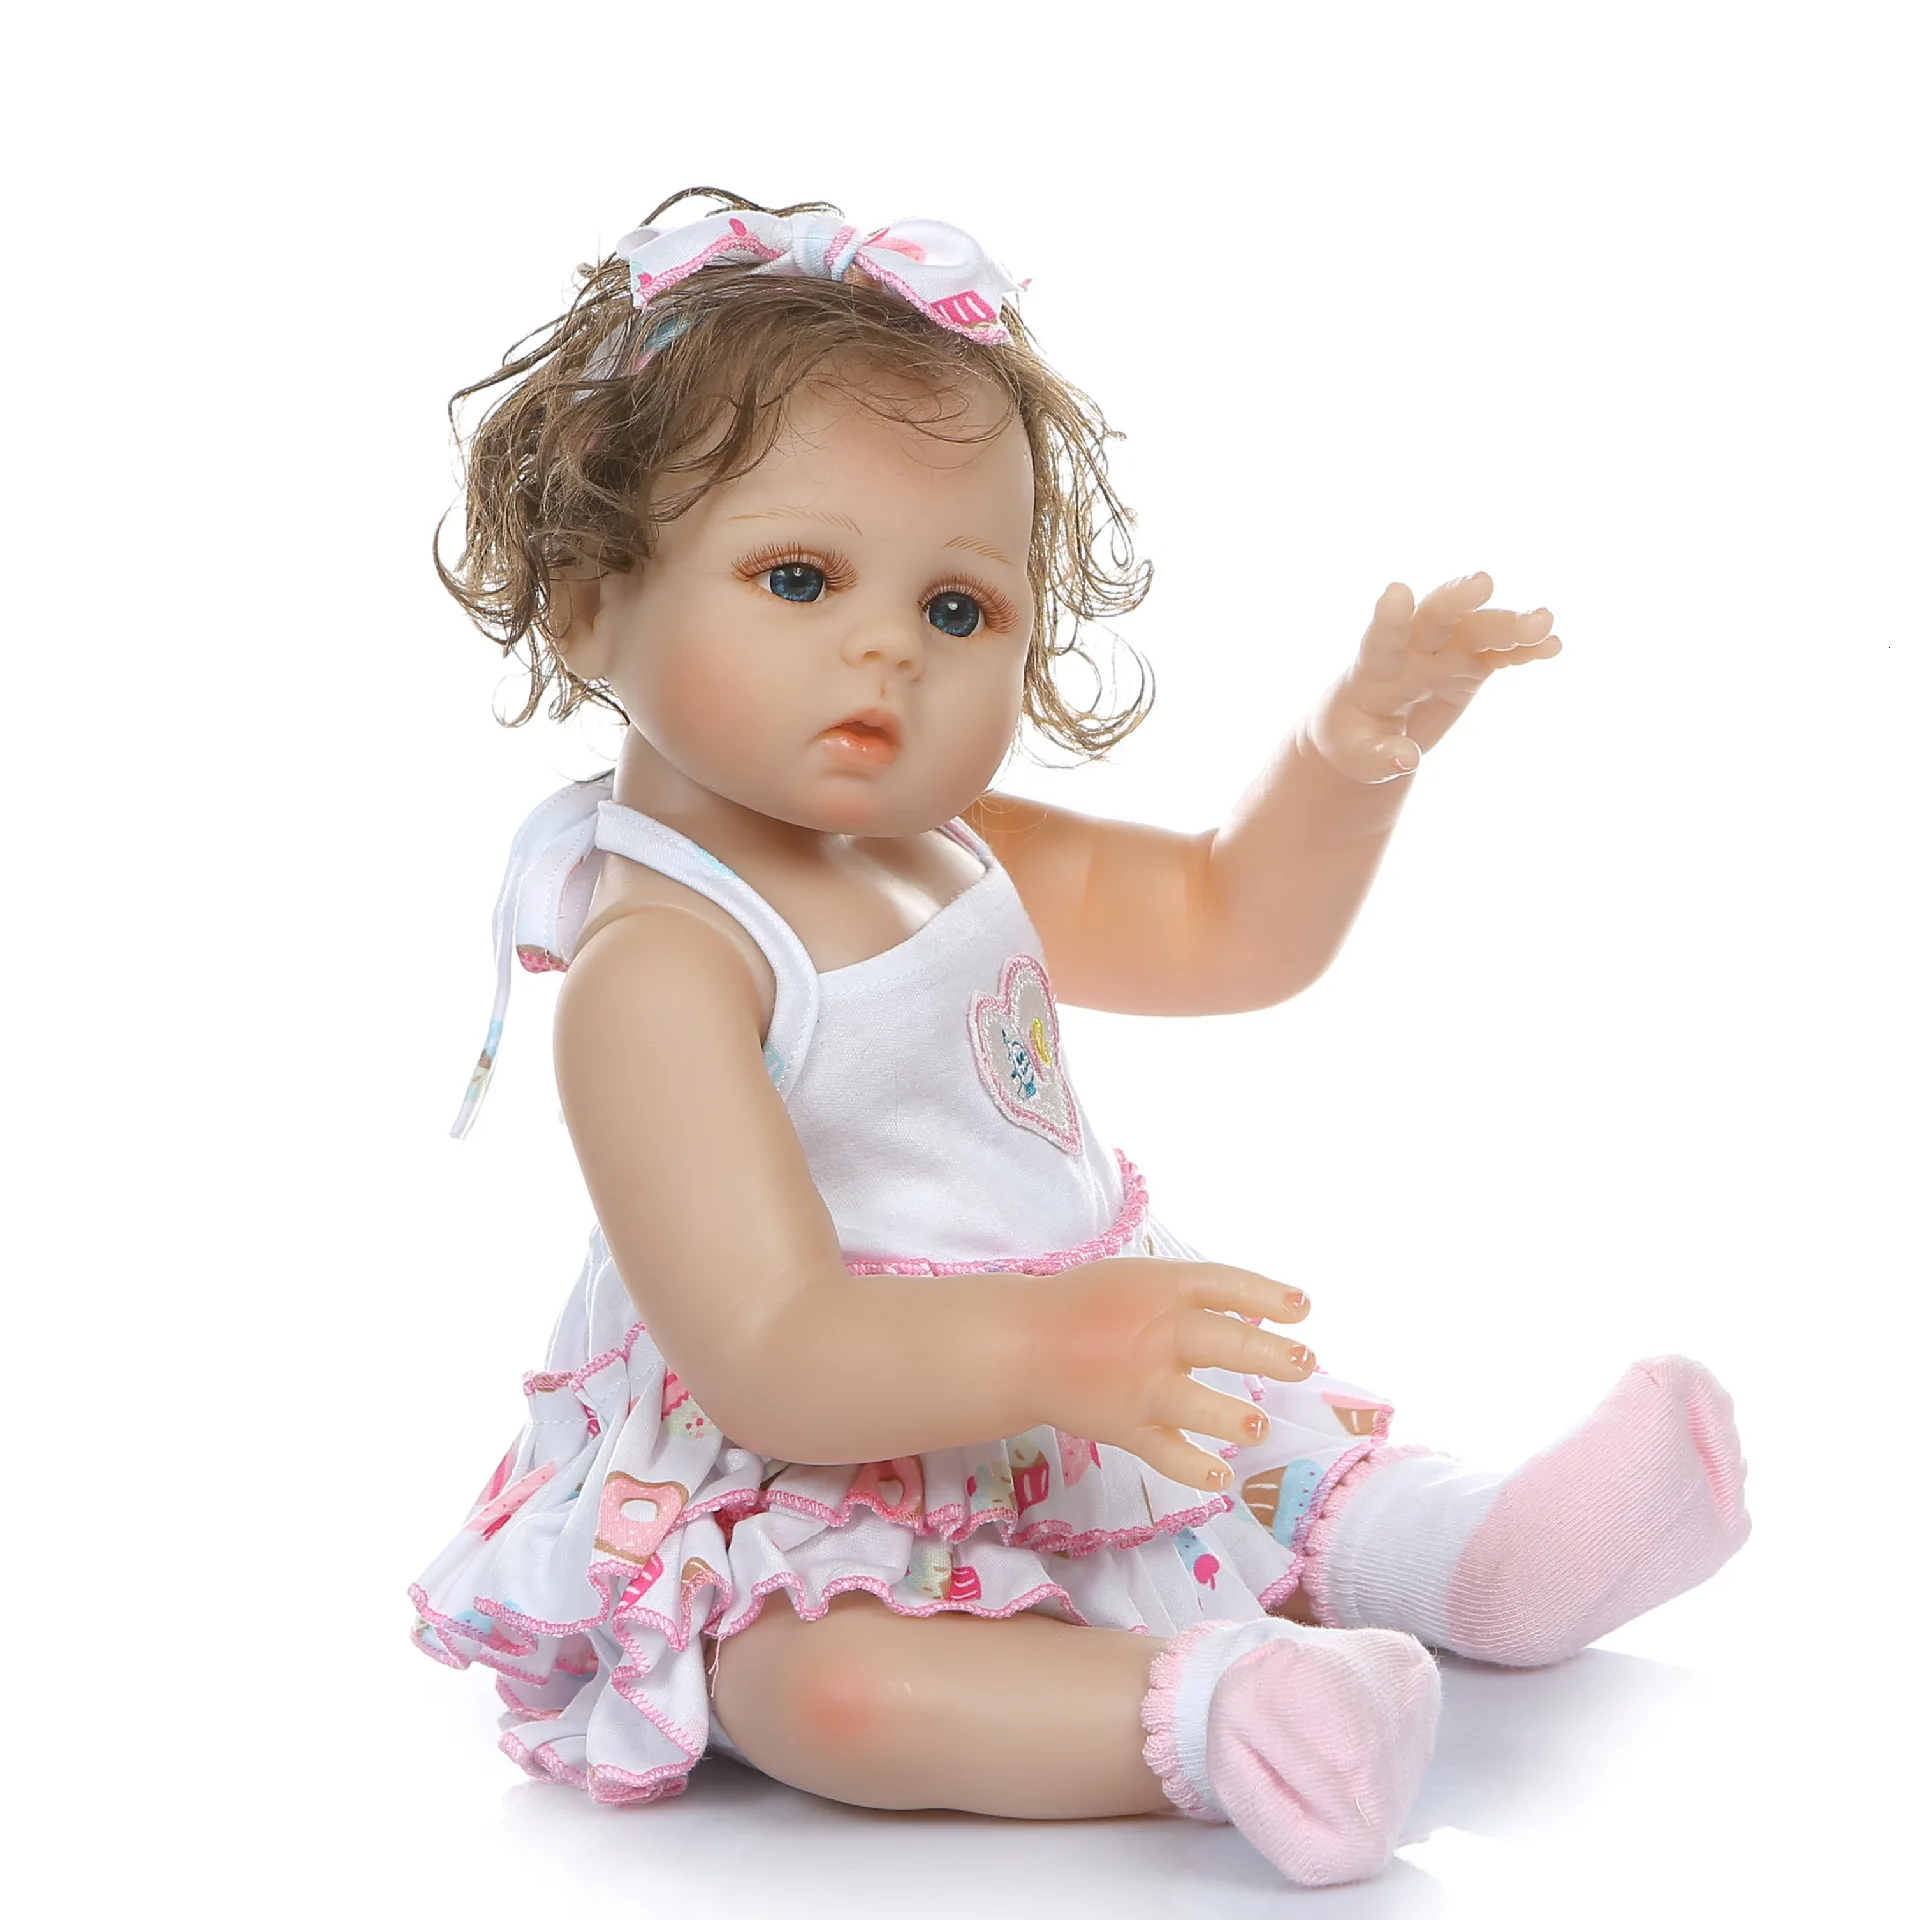 48 см Моделирование детских кукол девушка реалистичные милые лица локон волос enchantimalal куклы DIY игрушки Мягкие силиконовые Bonecas дети Сюрприз подарок